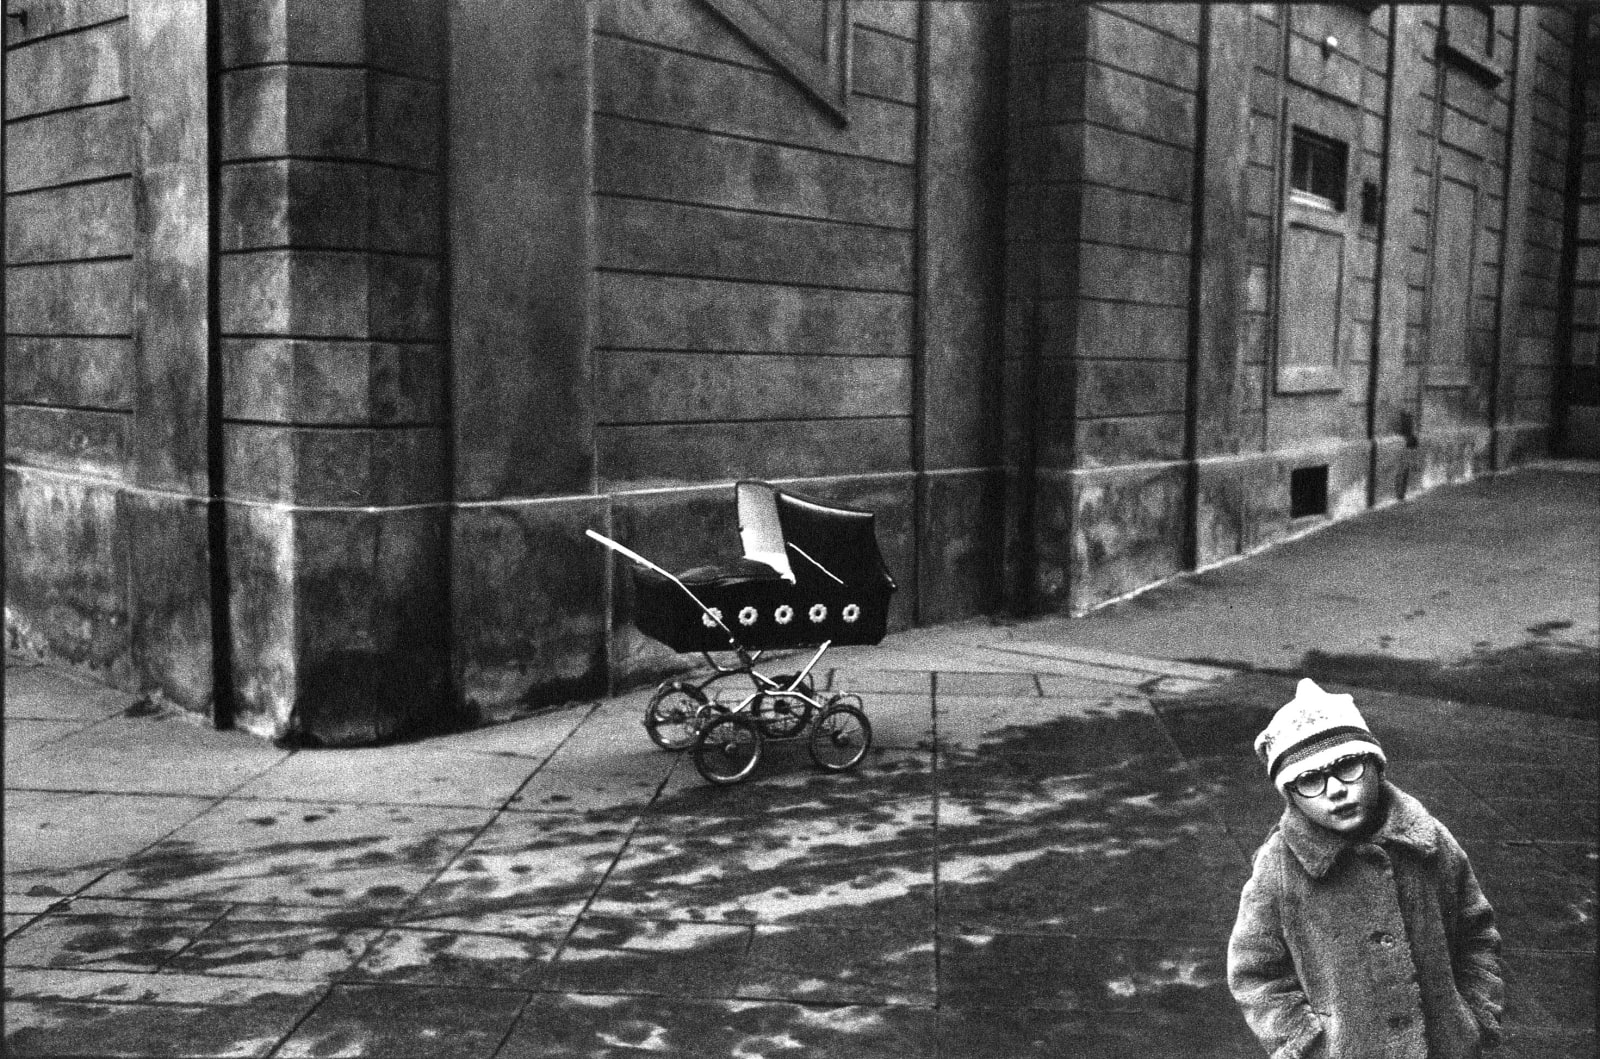 Paul Ickovic, Prague, Czechoslovakia (Boy with Glasses, Pram, Carriage), 1980